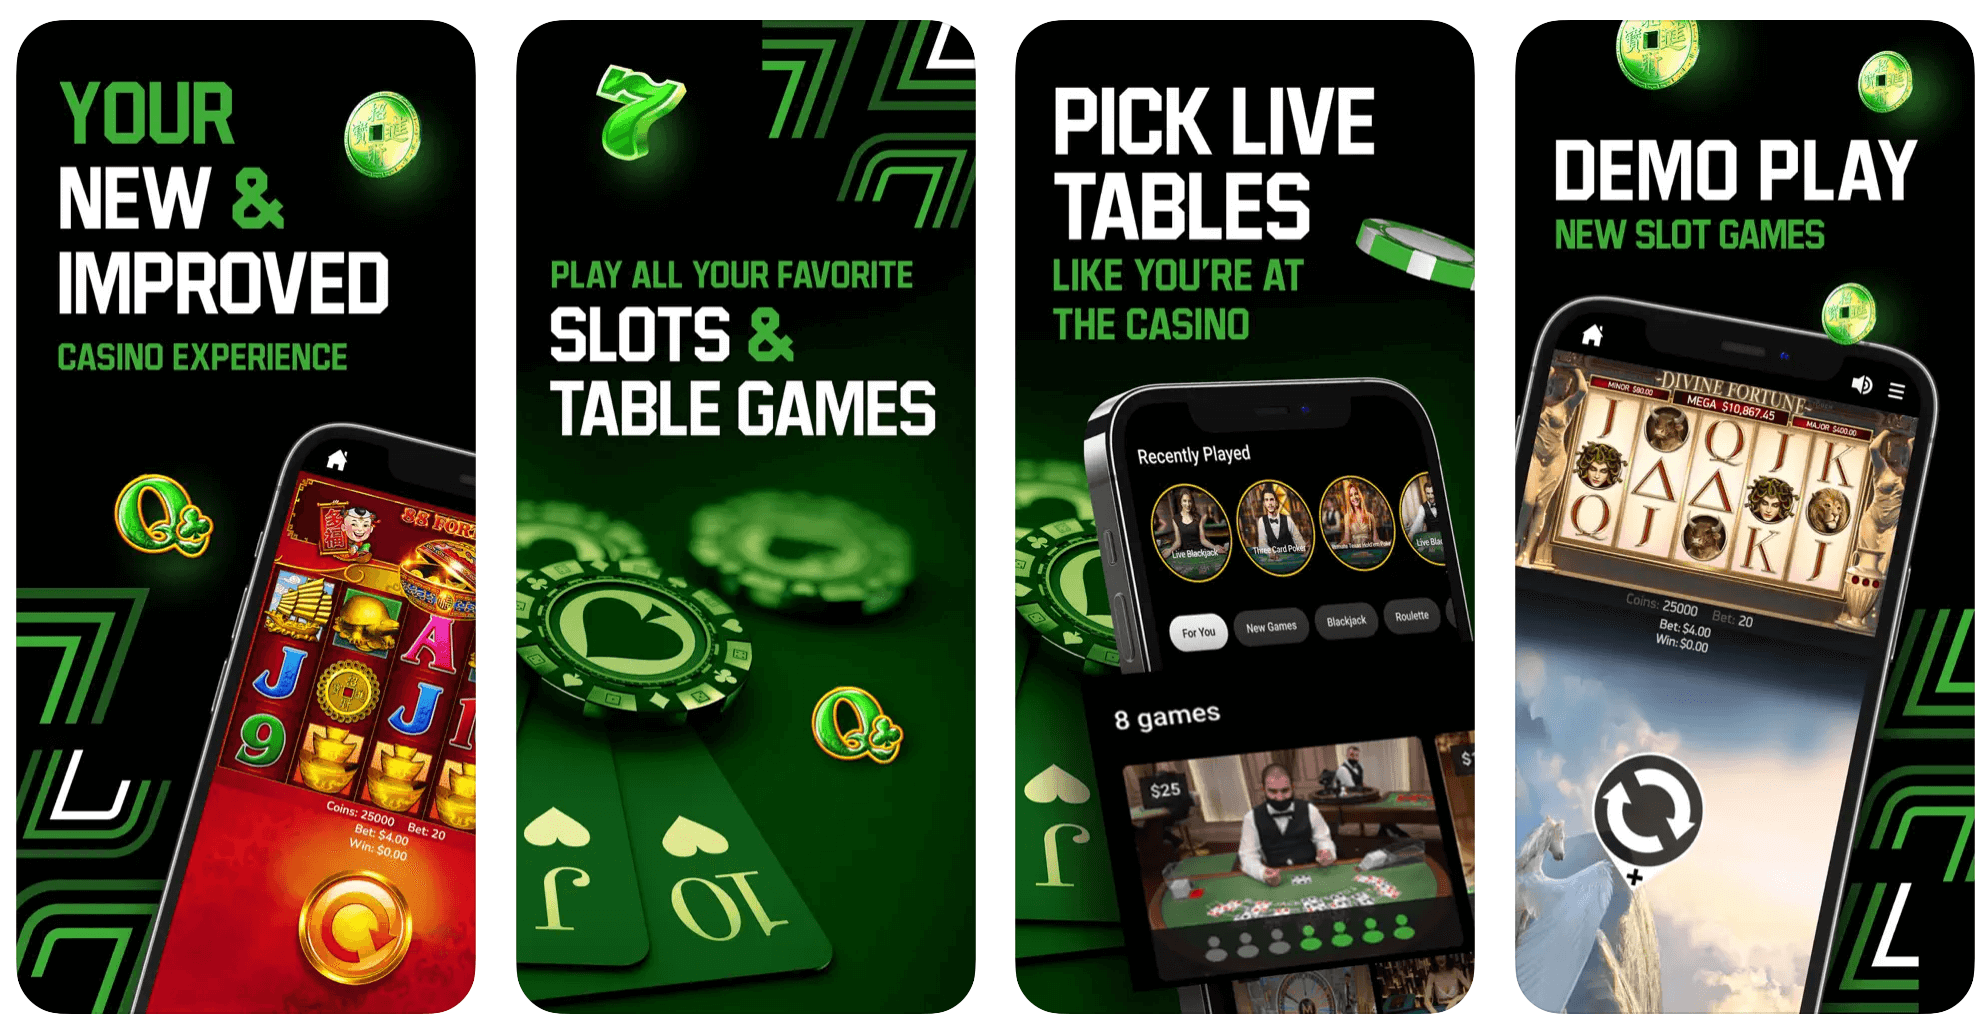 Unibet NJ Casino App